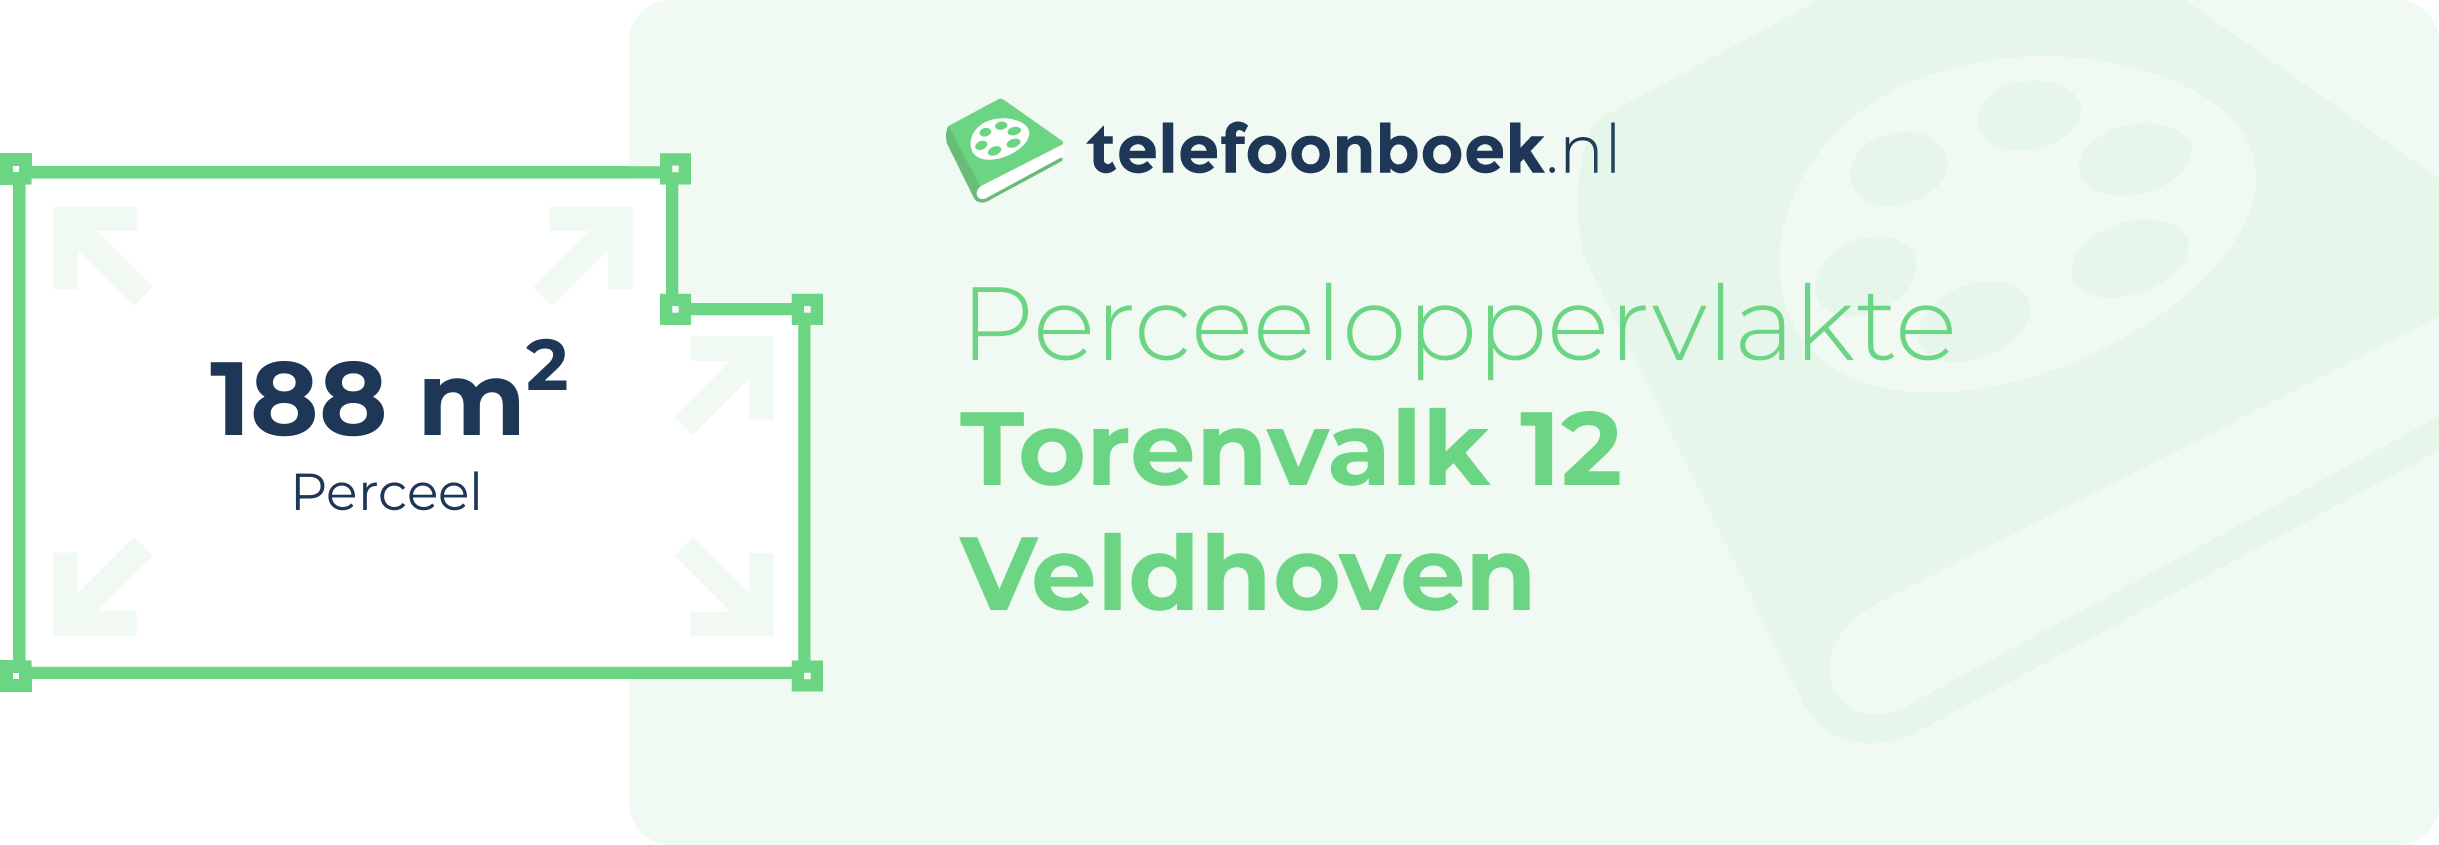 Perceeloppervlakte Torenvalk 12 Veldhoven